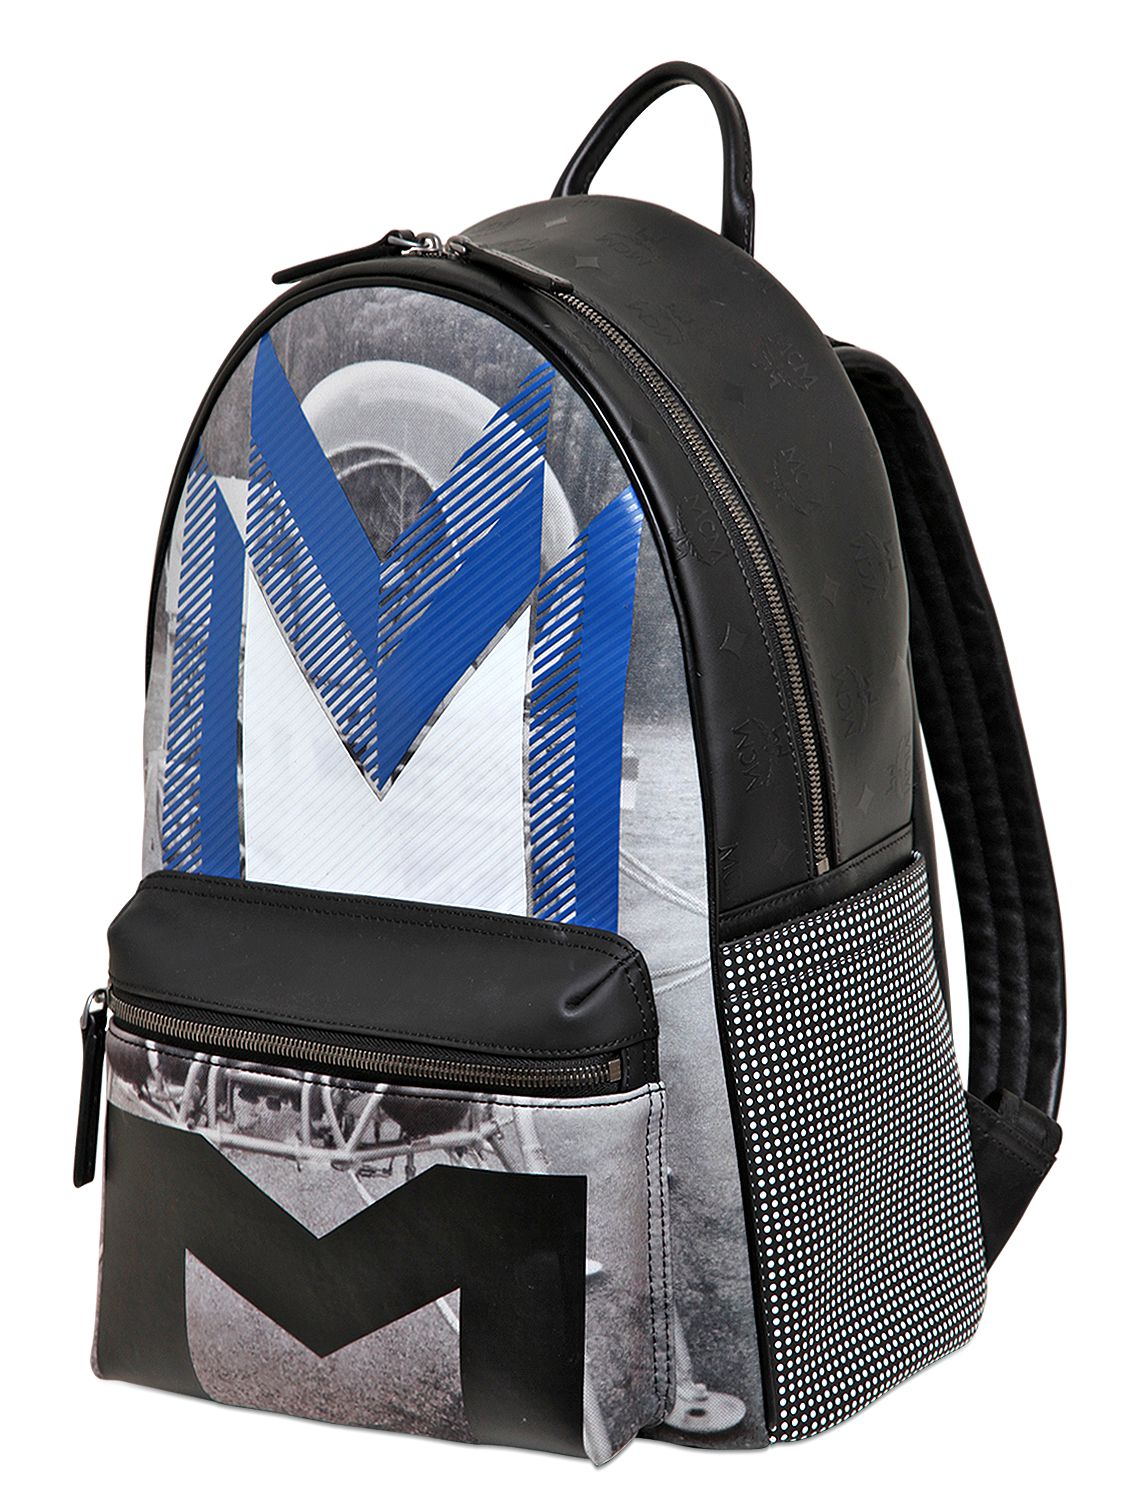 MCM Neoprene Medium Moonwalker Backpack in Black/Blue (Blue) - Lyst